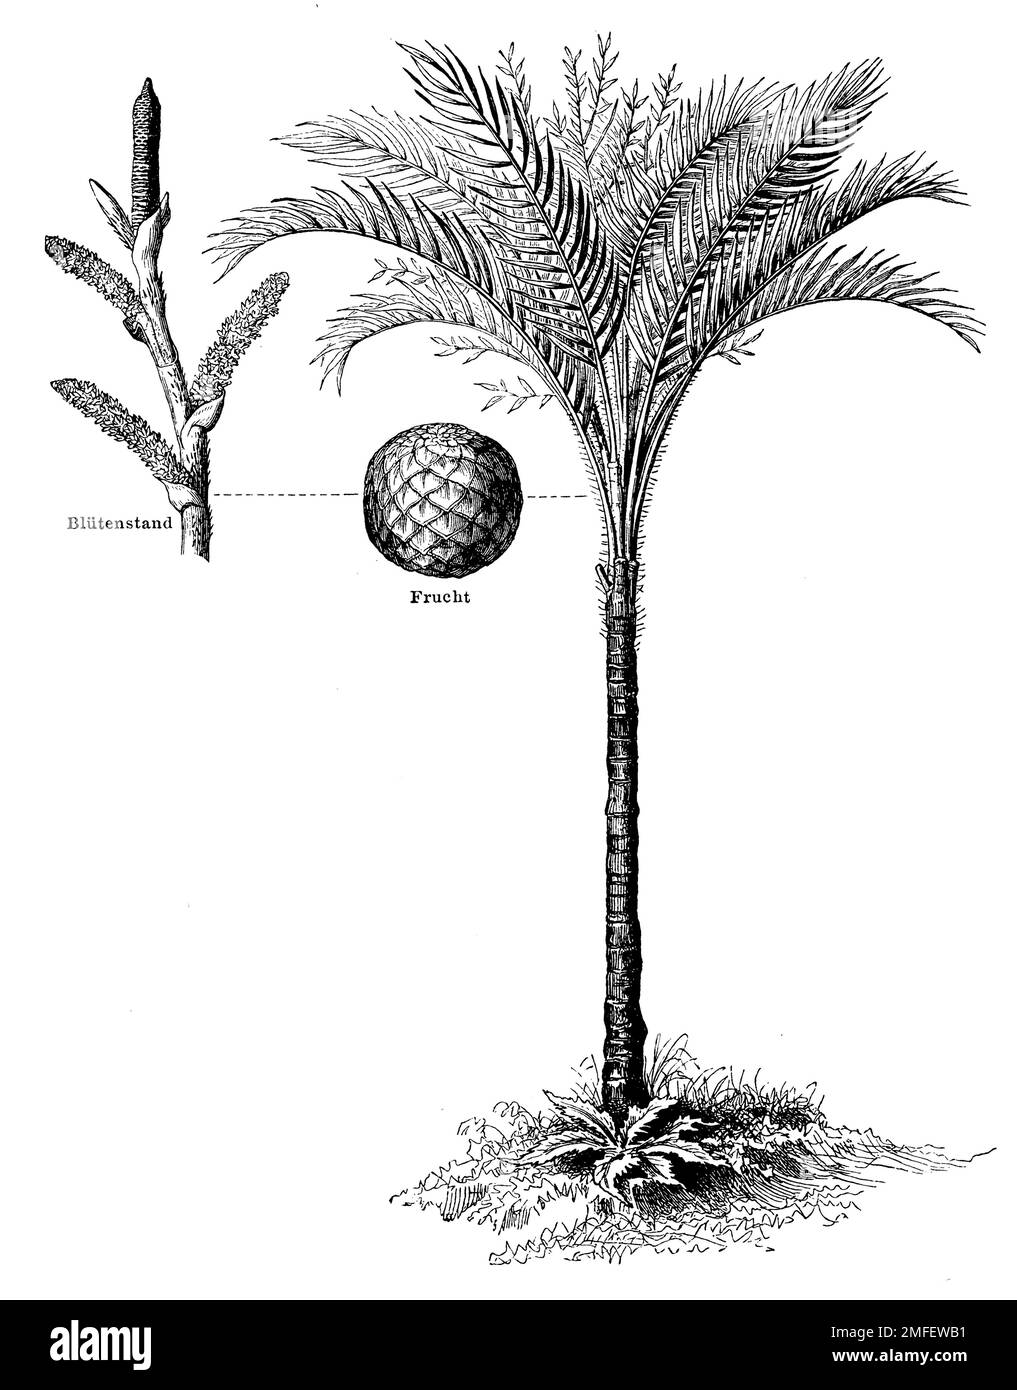 sago palm, Metroxylon sagu,  (encyclopedia, 1888), Sagopalme, sagoutier Stock Photo